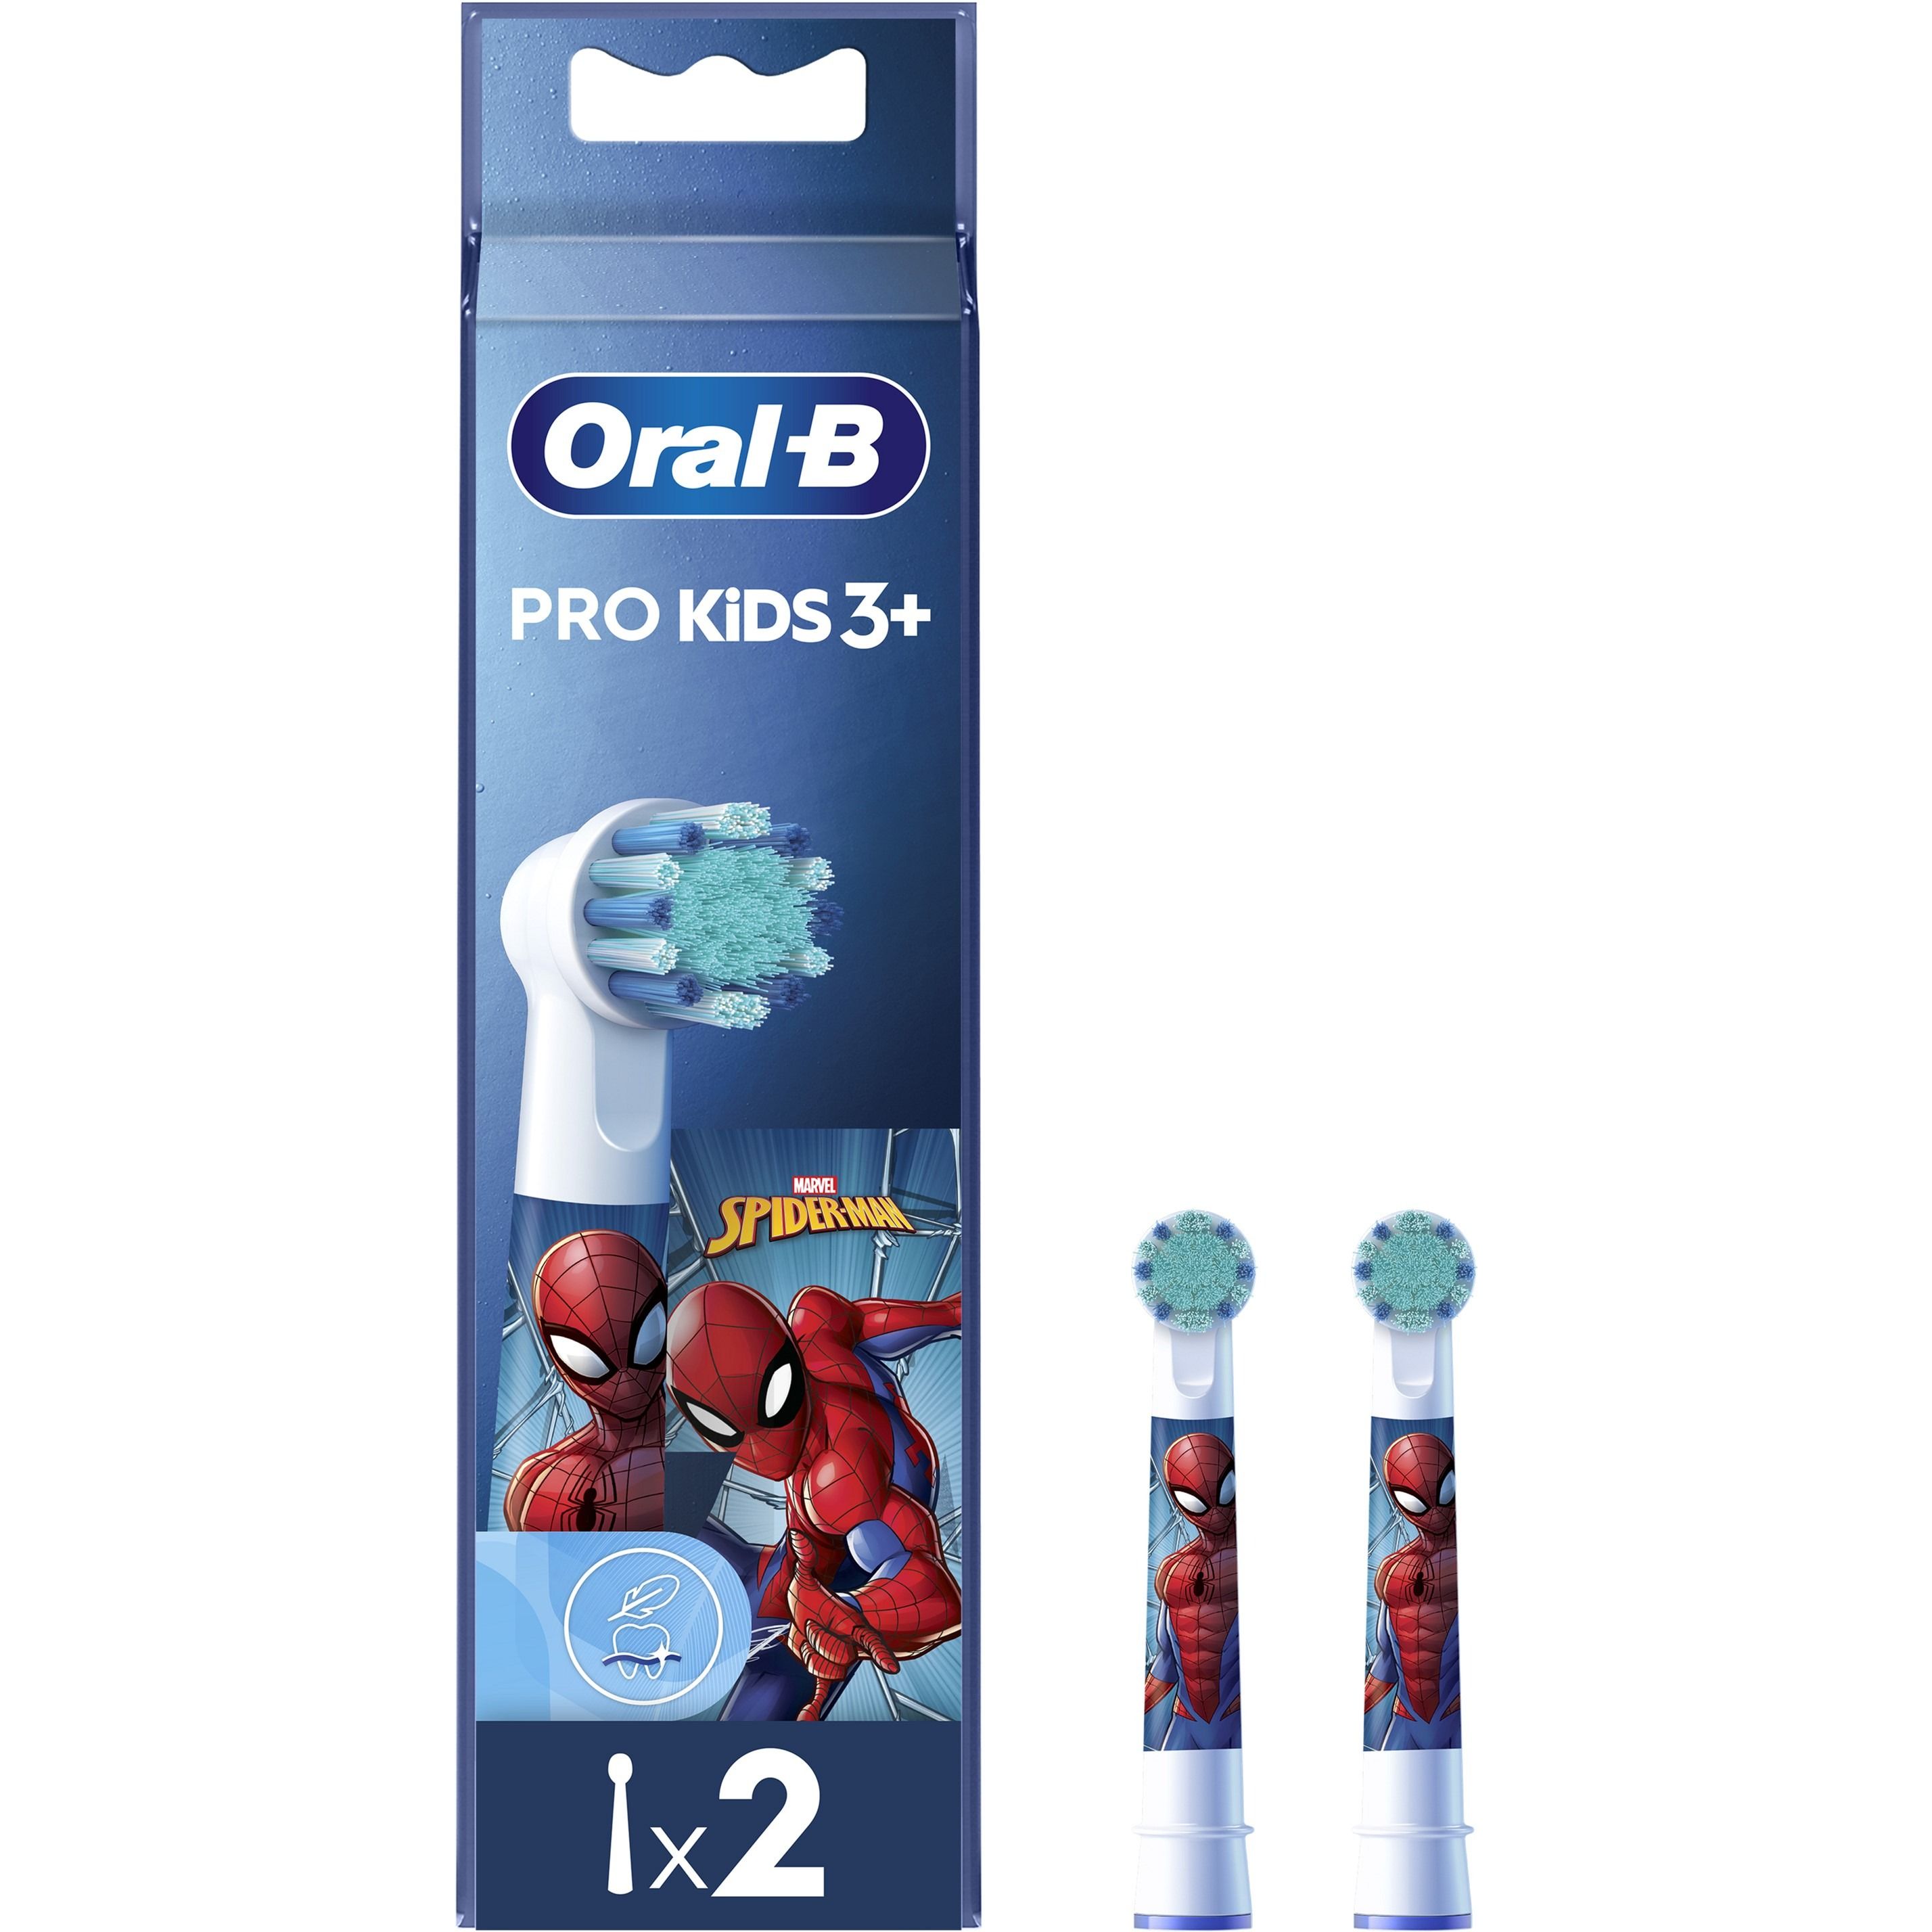 Змінні насадки до електричної зубної щітки Oral-B Pro Kids 3+ Spiderman EB10S 2 шт. - фото 2